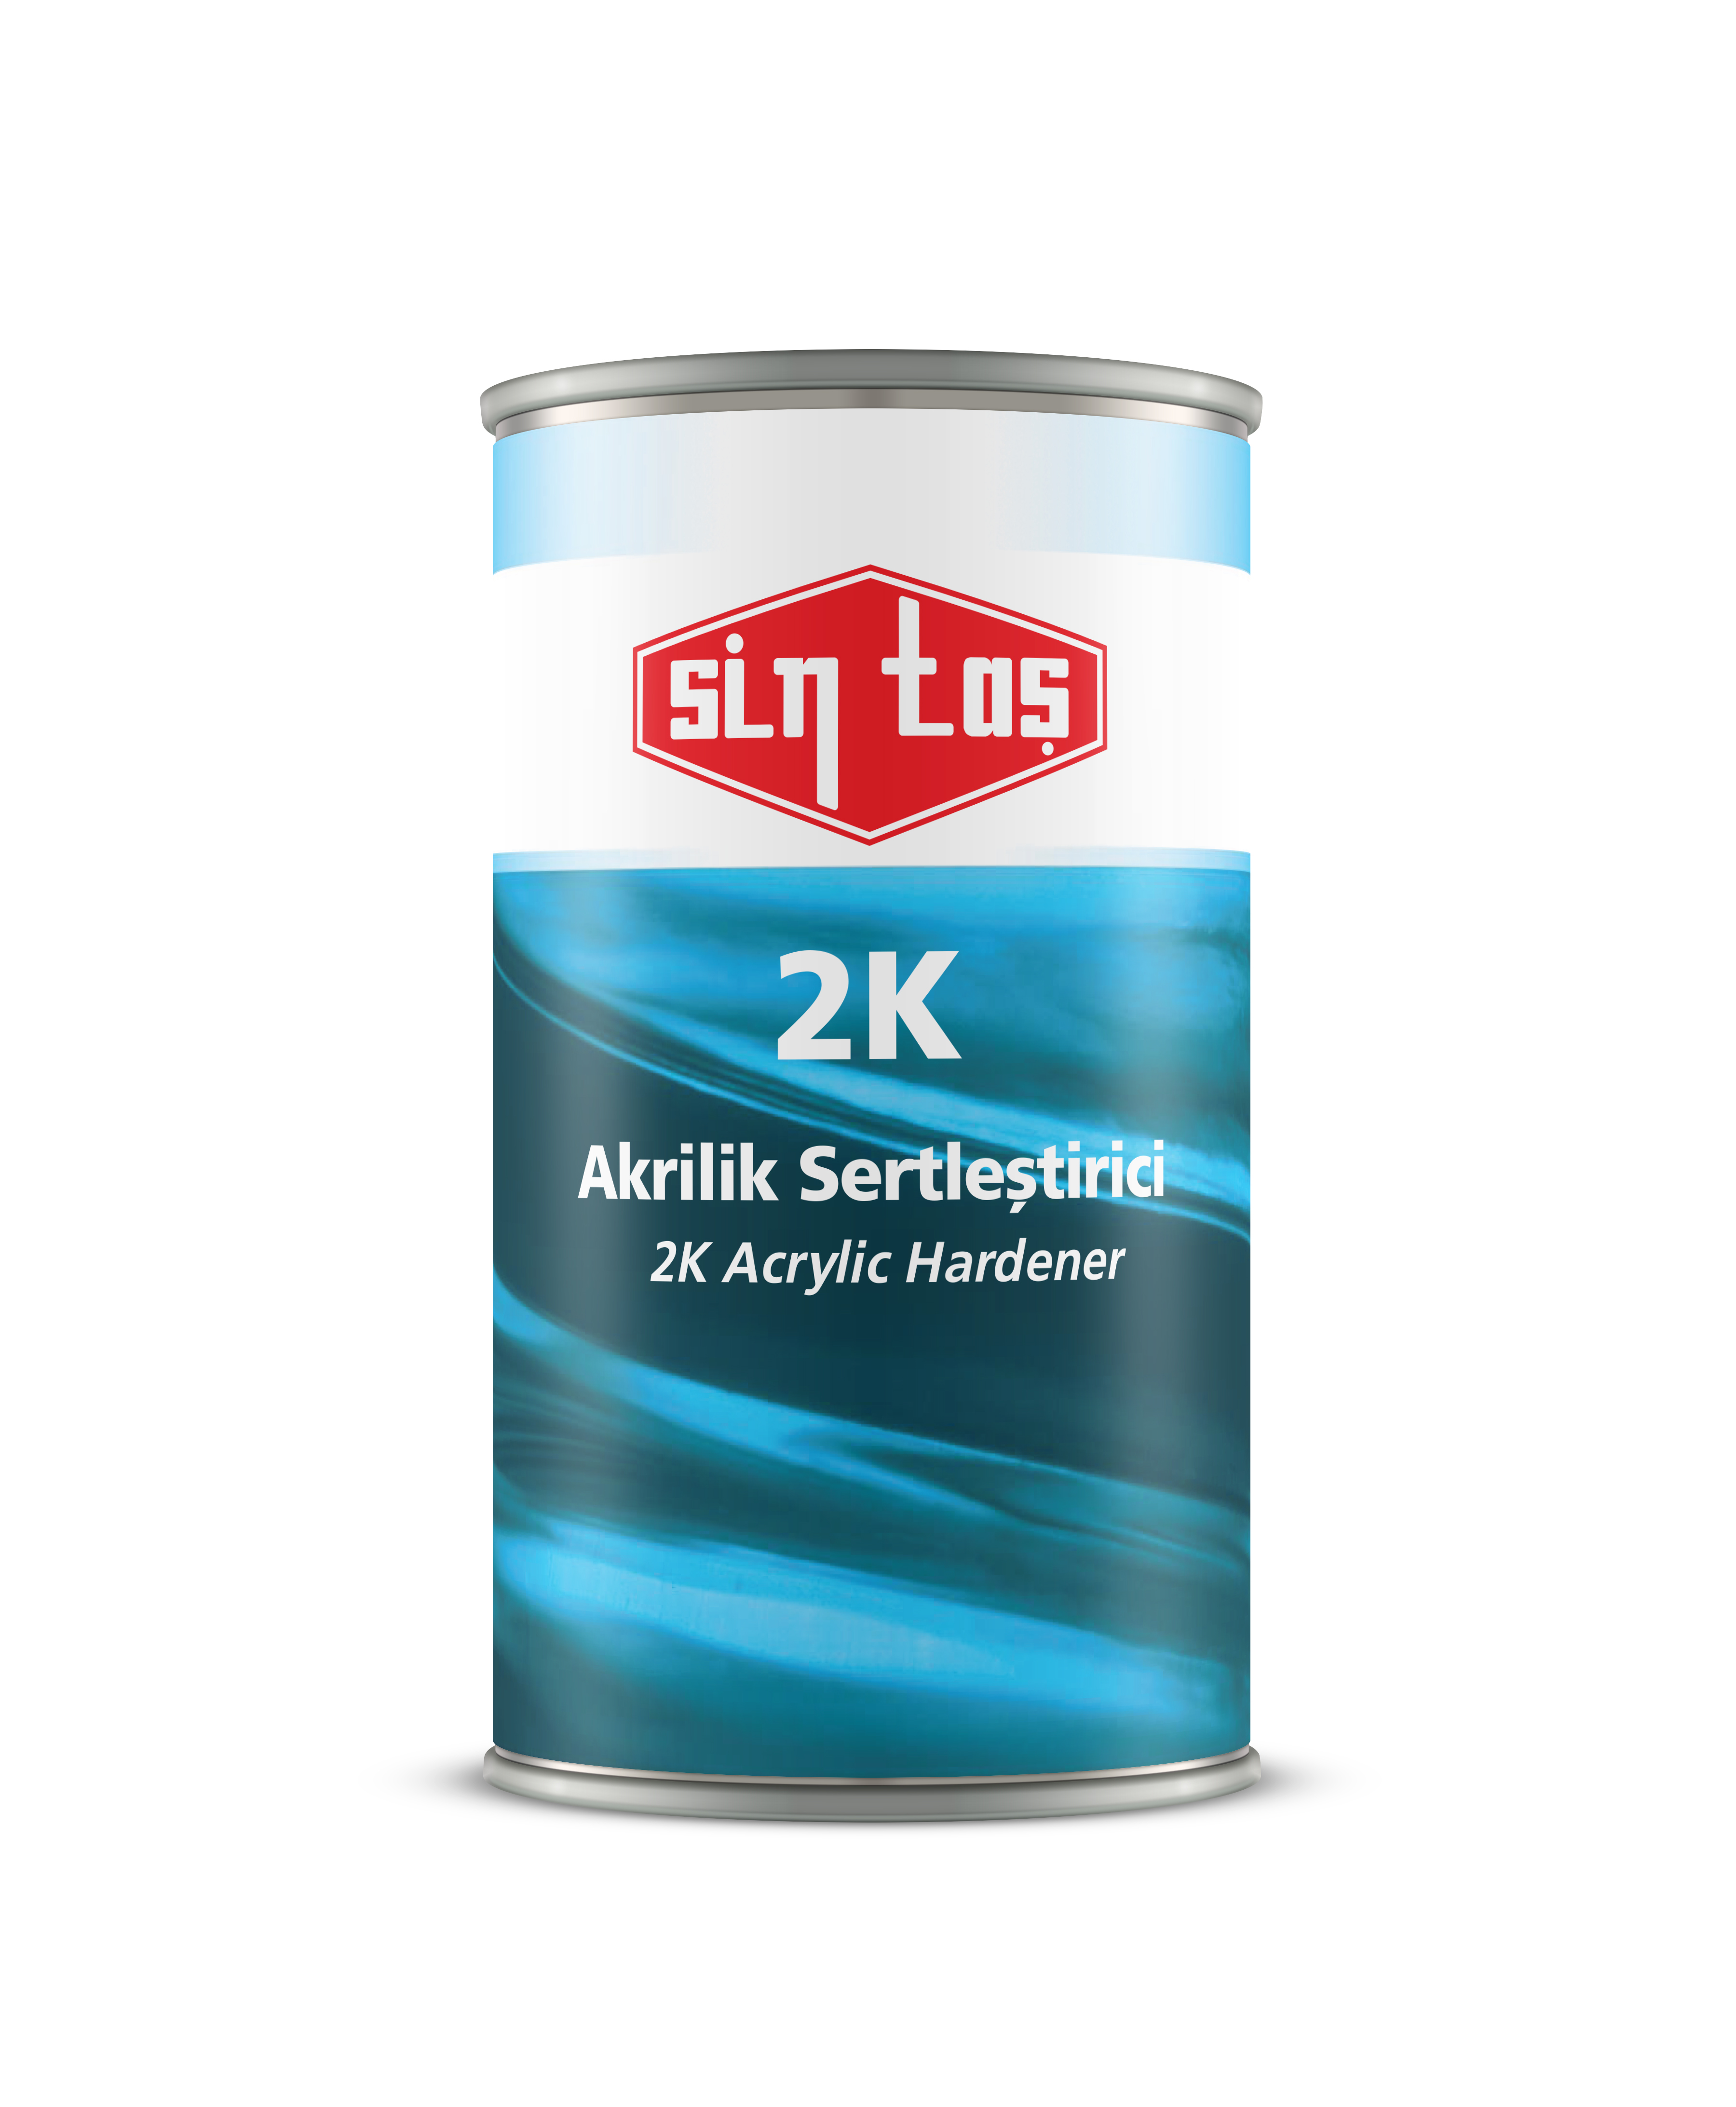 141 - Sintaş 2K Acrylic Hardener